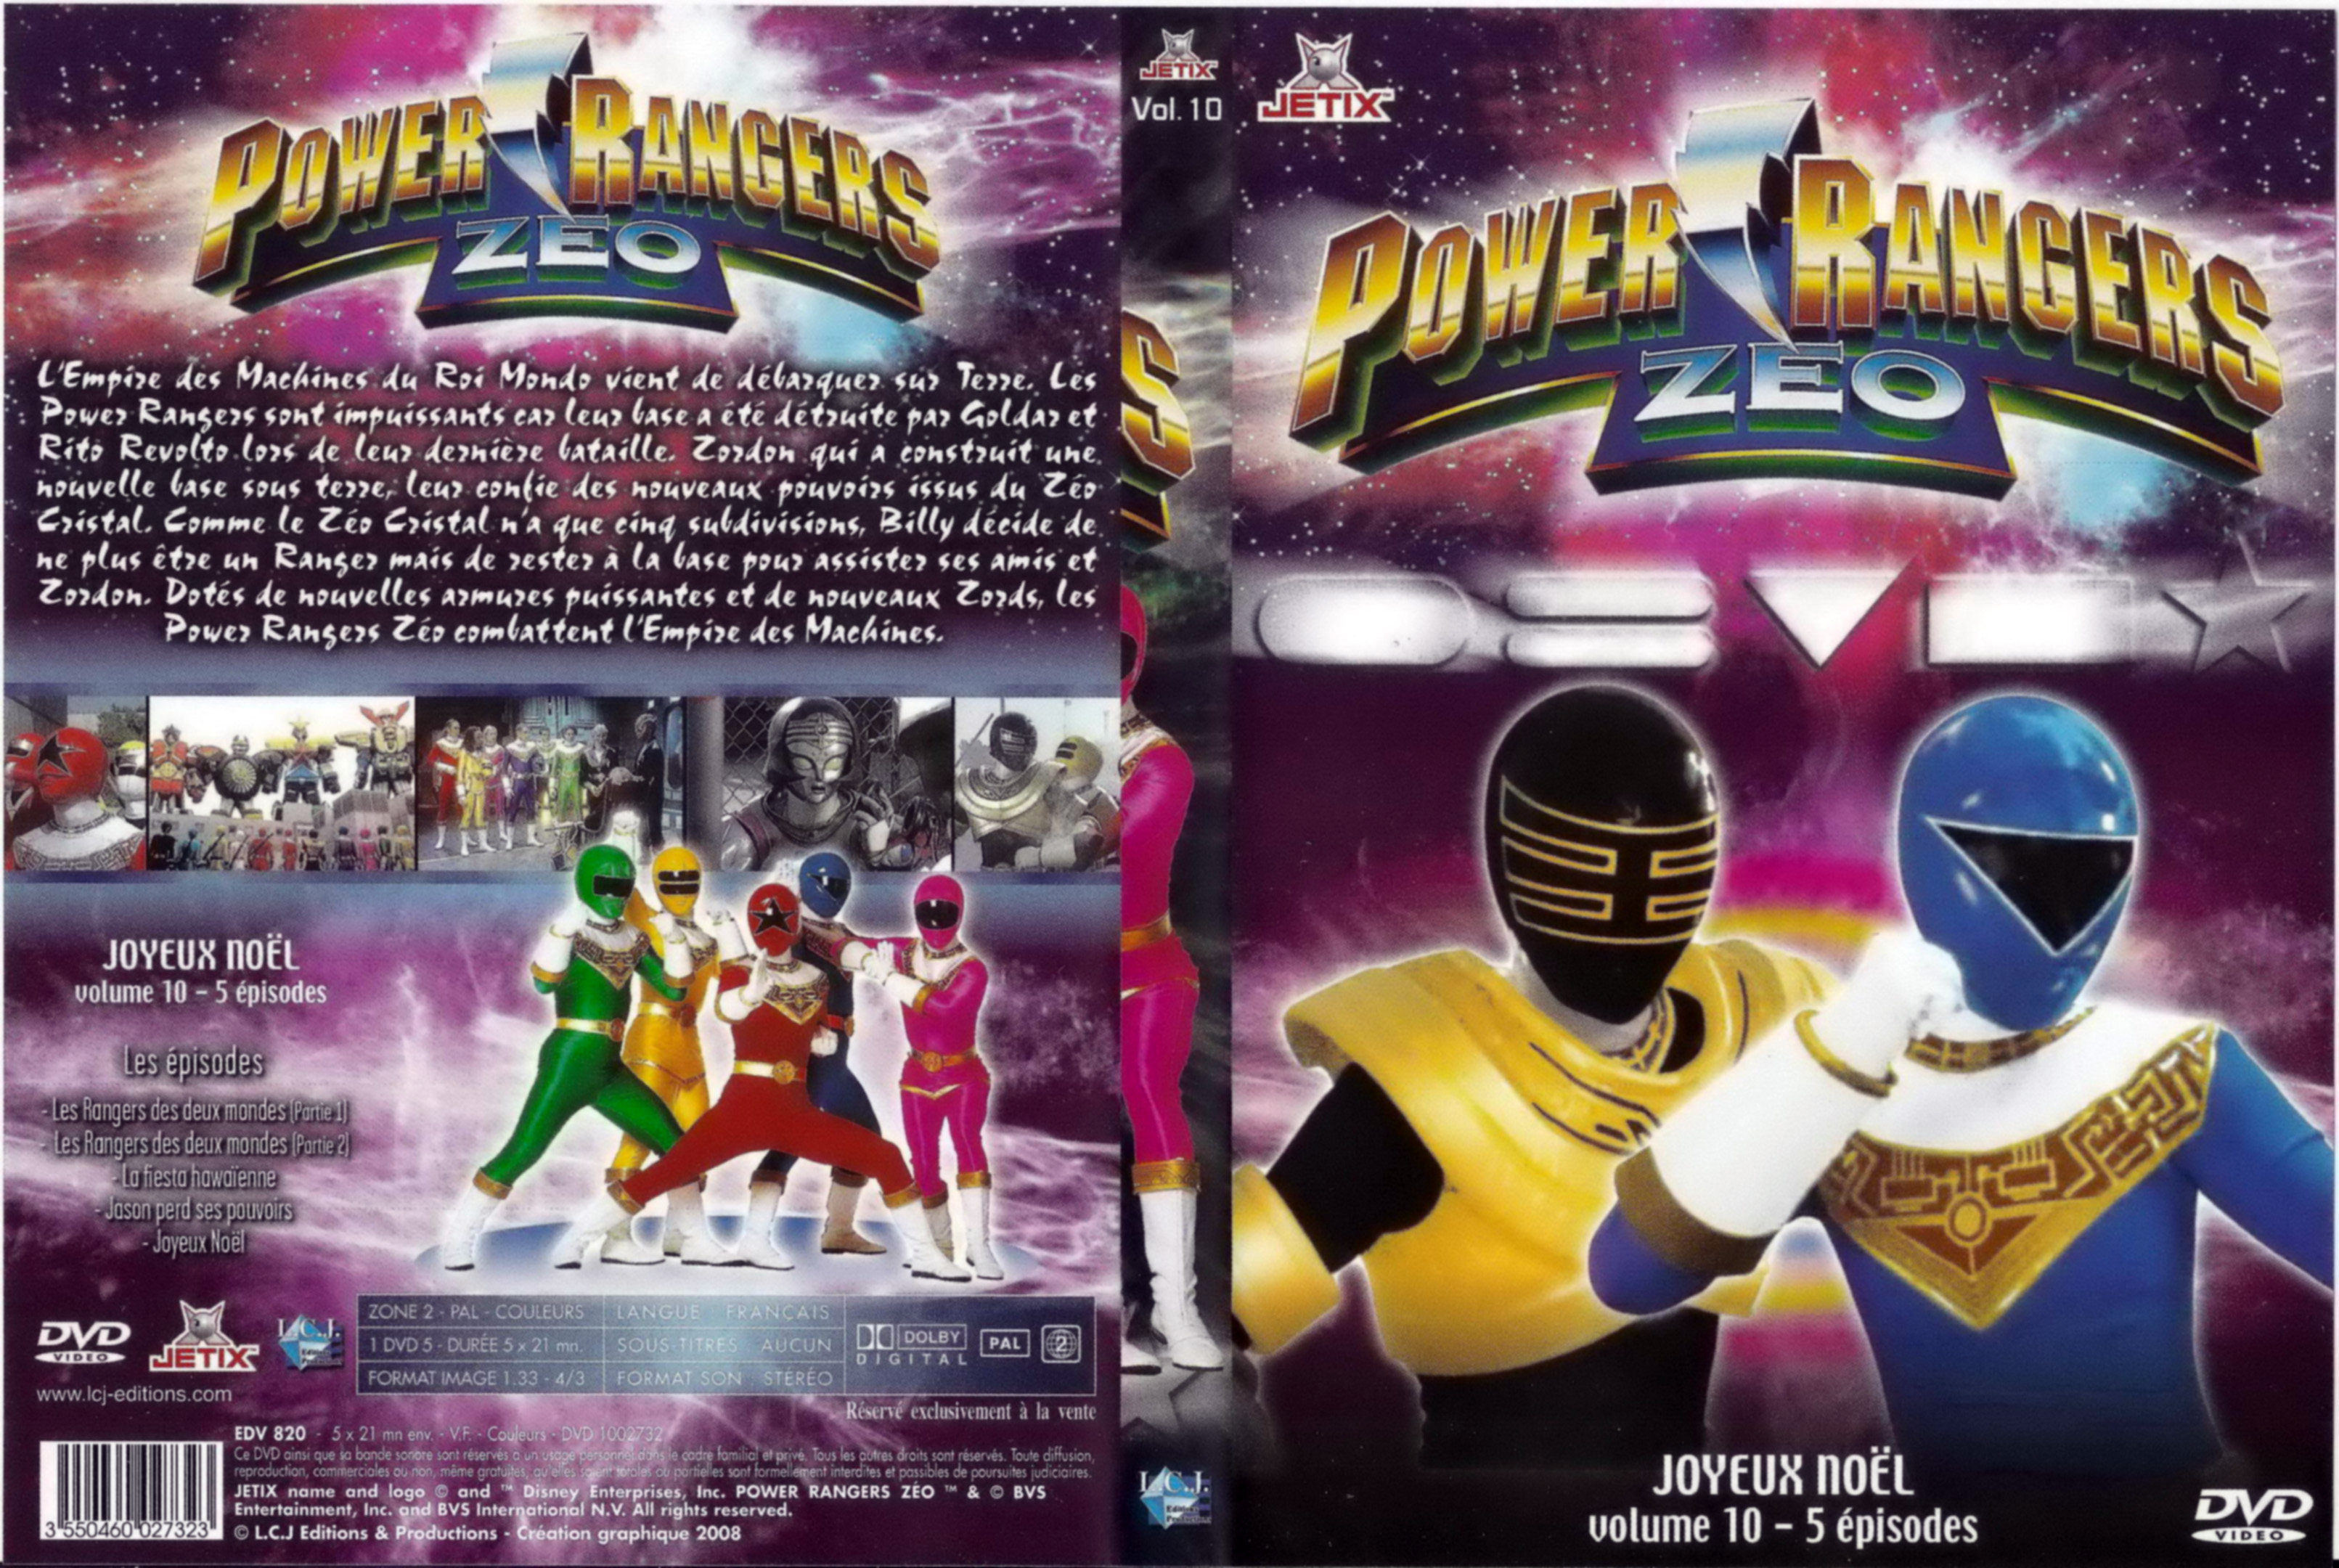 Jaquette DVD Power rangers zeo vol 10